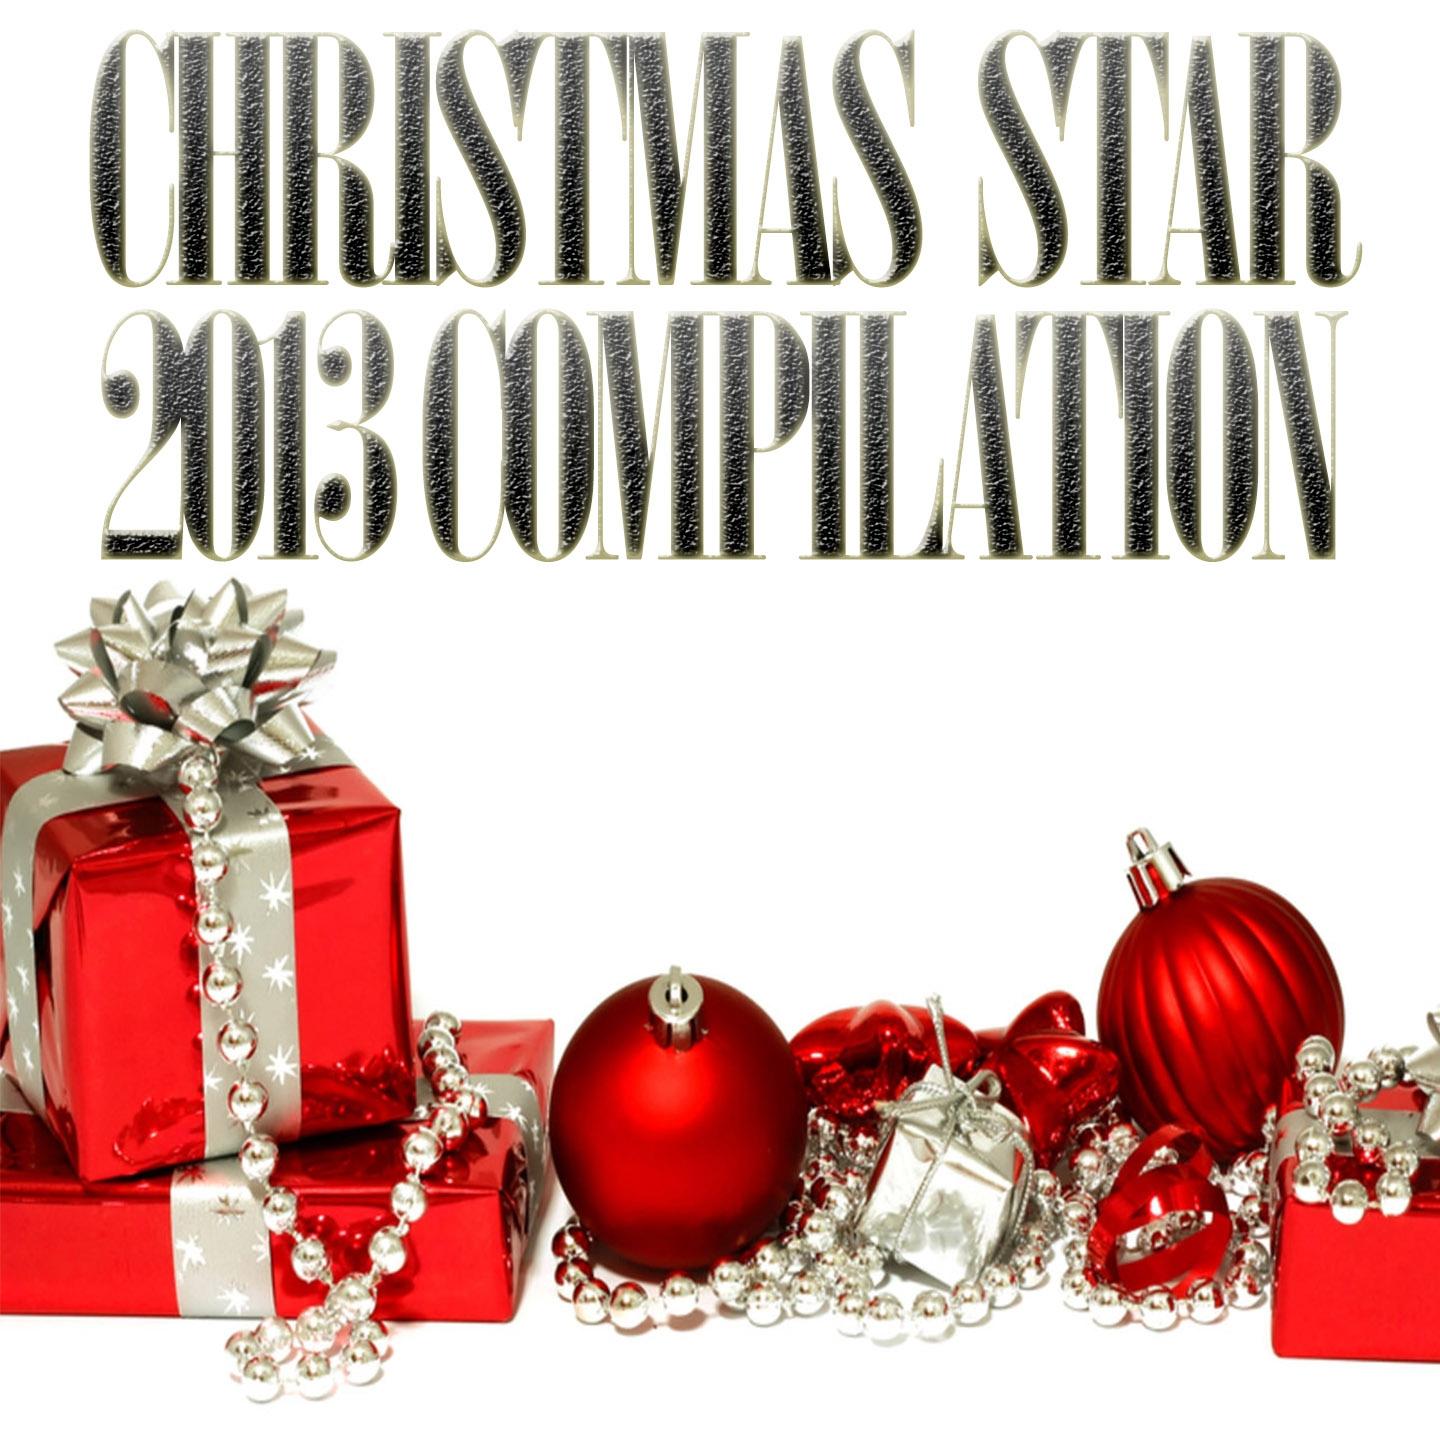 Christmas Stars 2013 Compilation